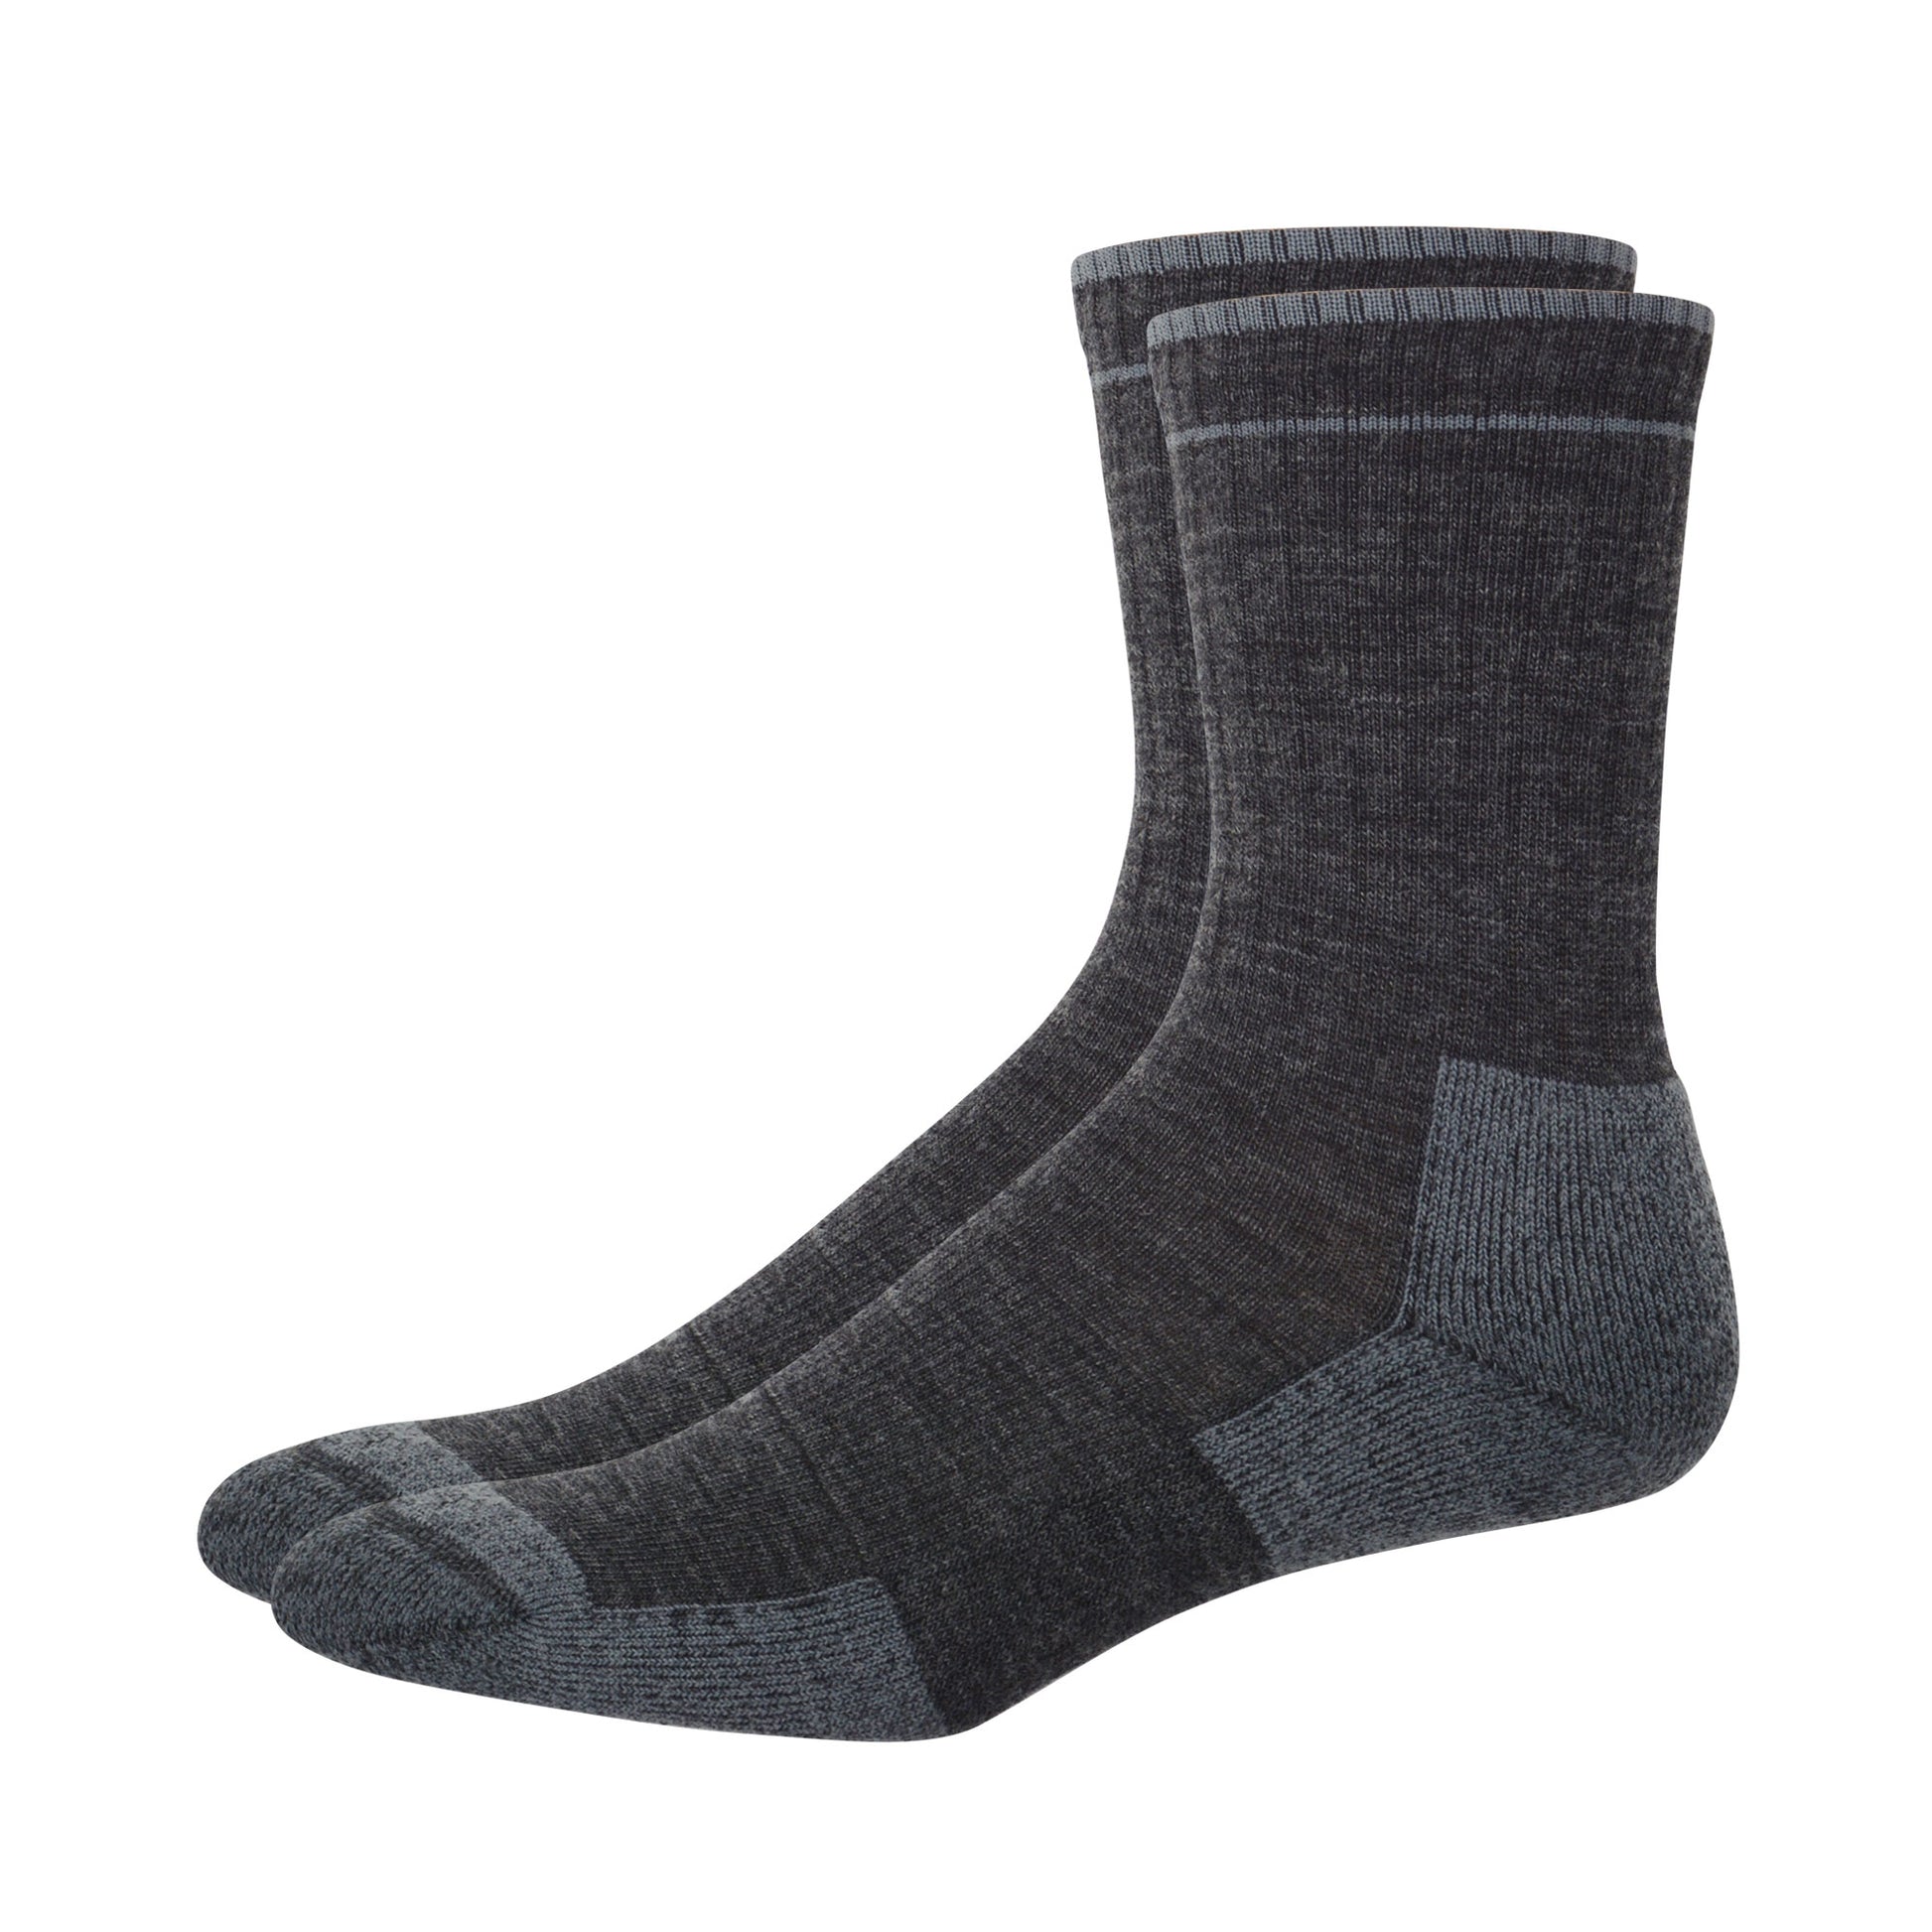 Pair of dark gray merino wool trail socks. 